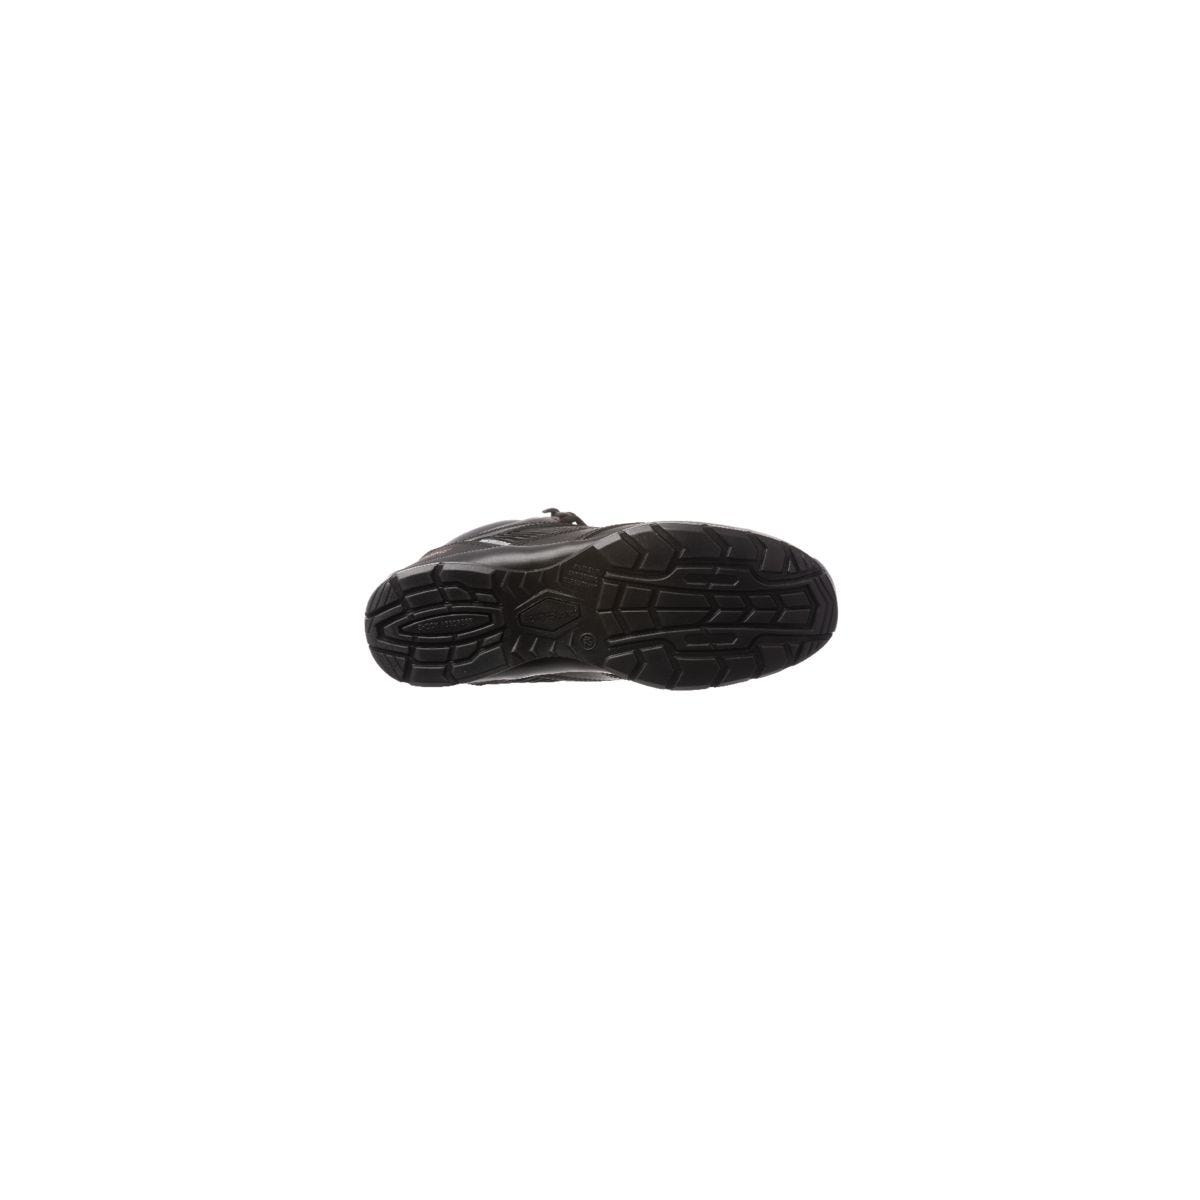 Chaussure de sécurité ASTROLITE S3 SRC haute noire composite - COVERGUARD - Taille 37 1